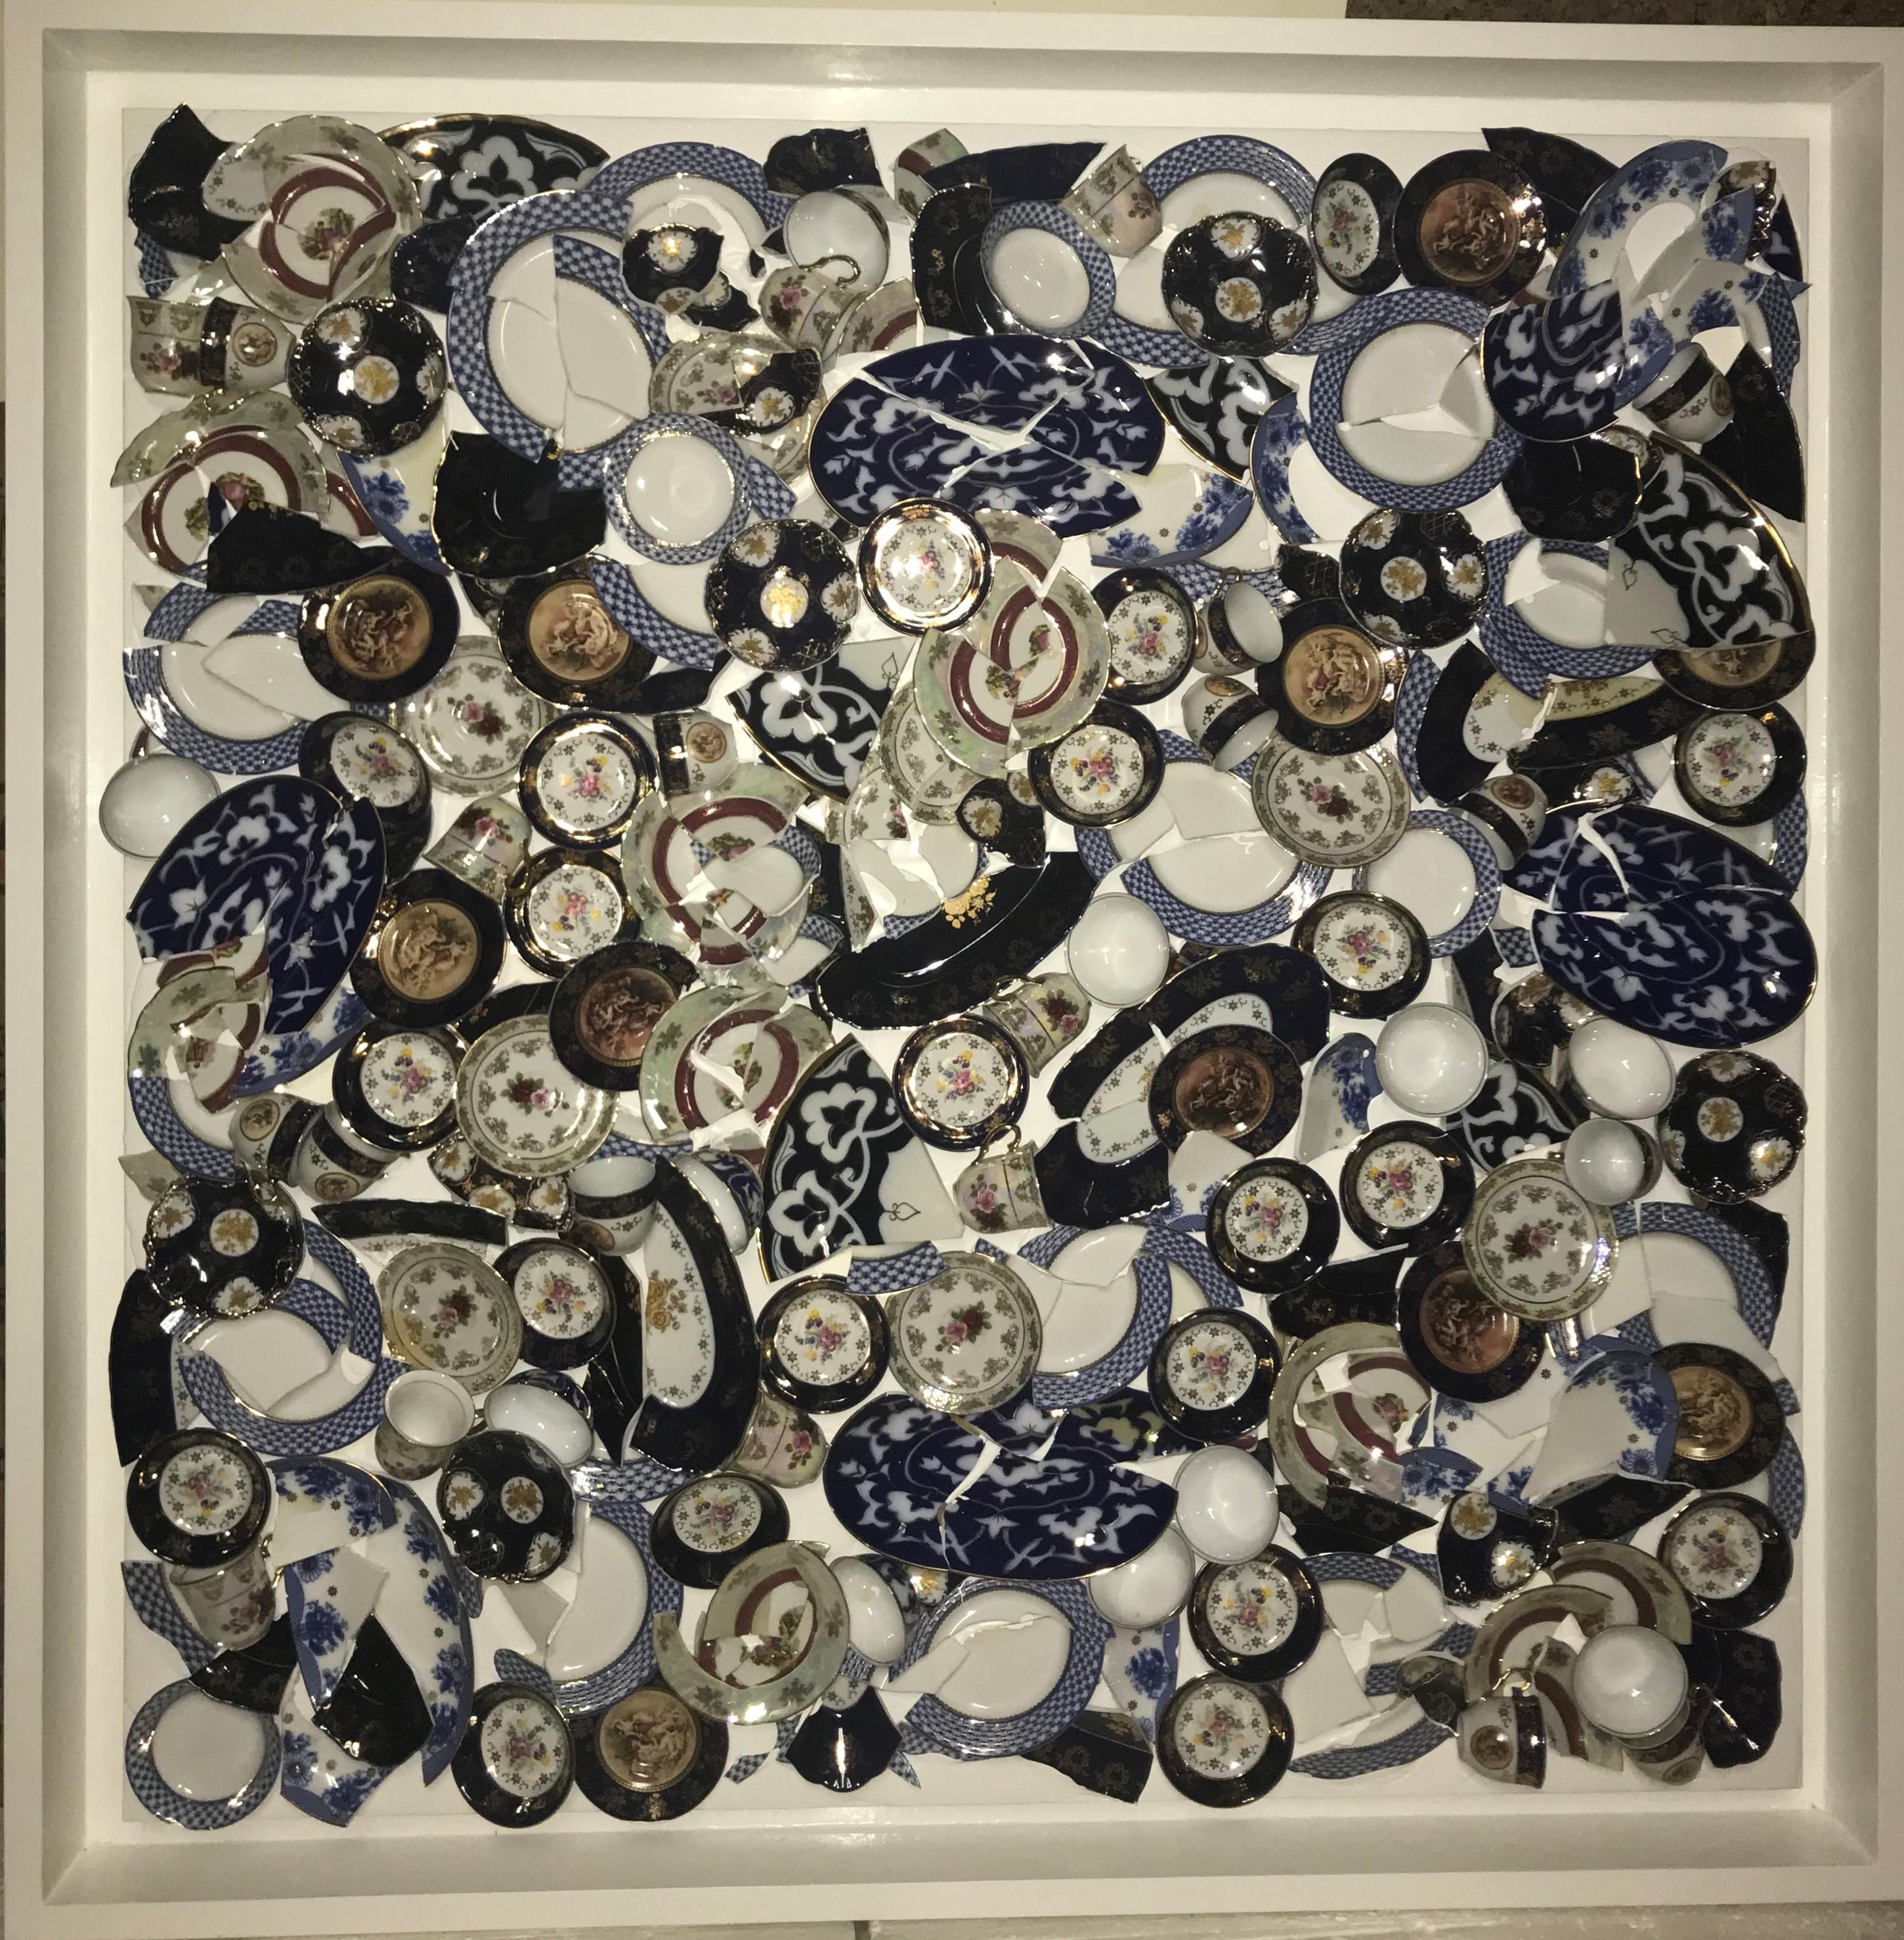 Chaotisches Pastell, quadratisch (Zeitgenössisch), Mixed Media Art, von David Datuna